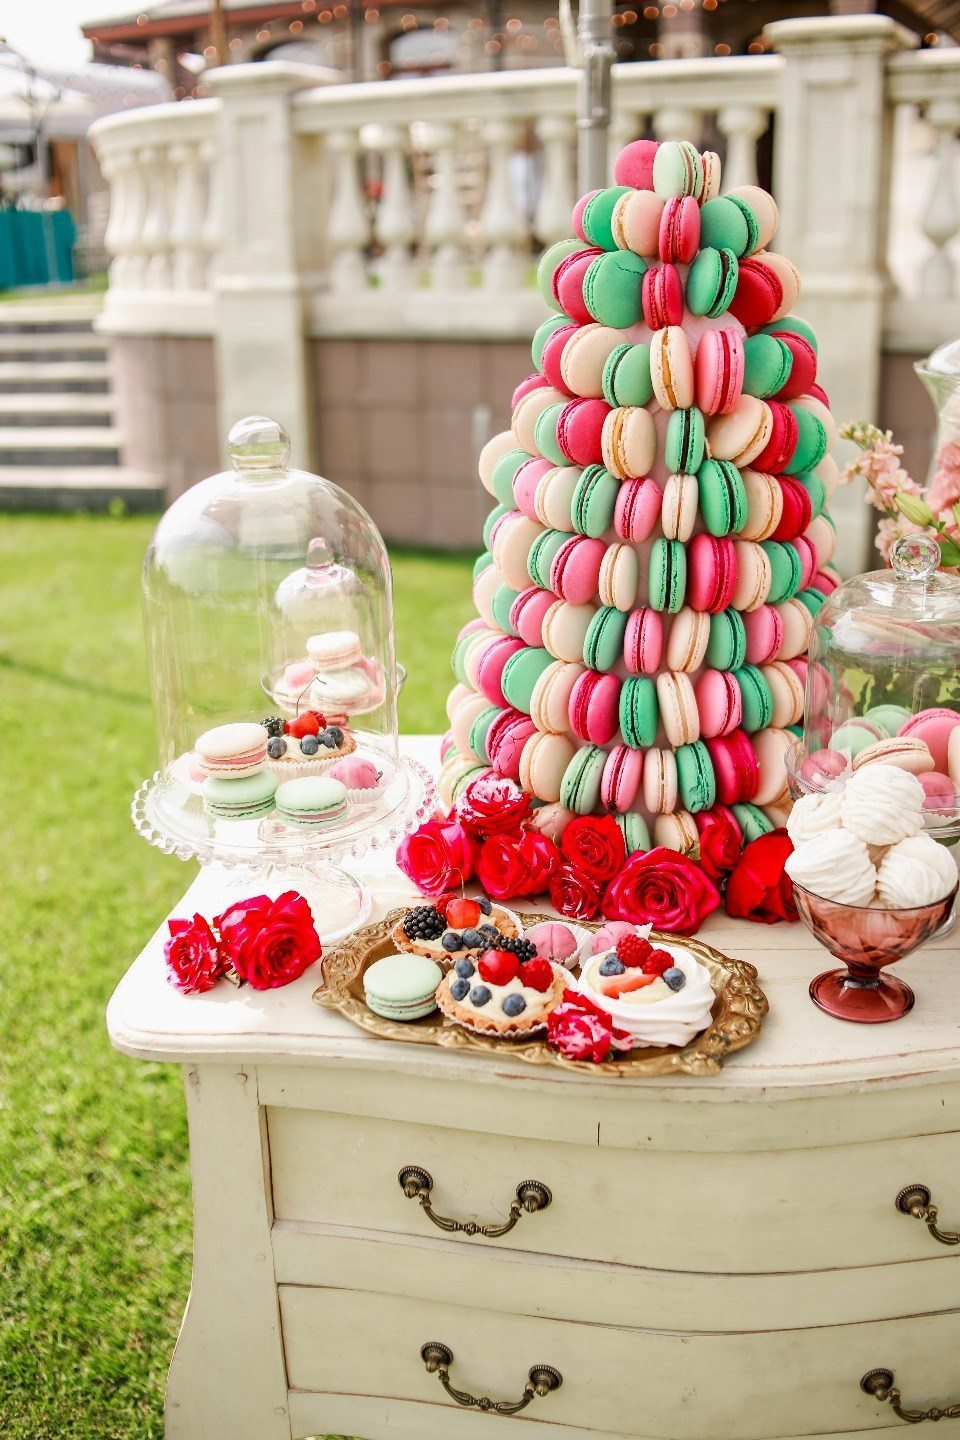 Zajímavým přízvukem pro sladkosti na šťavnatém a světlém stole budou veselé značky, vyrobené ve všeobecném stylu svatby